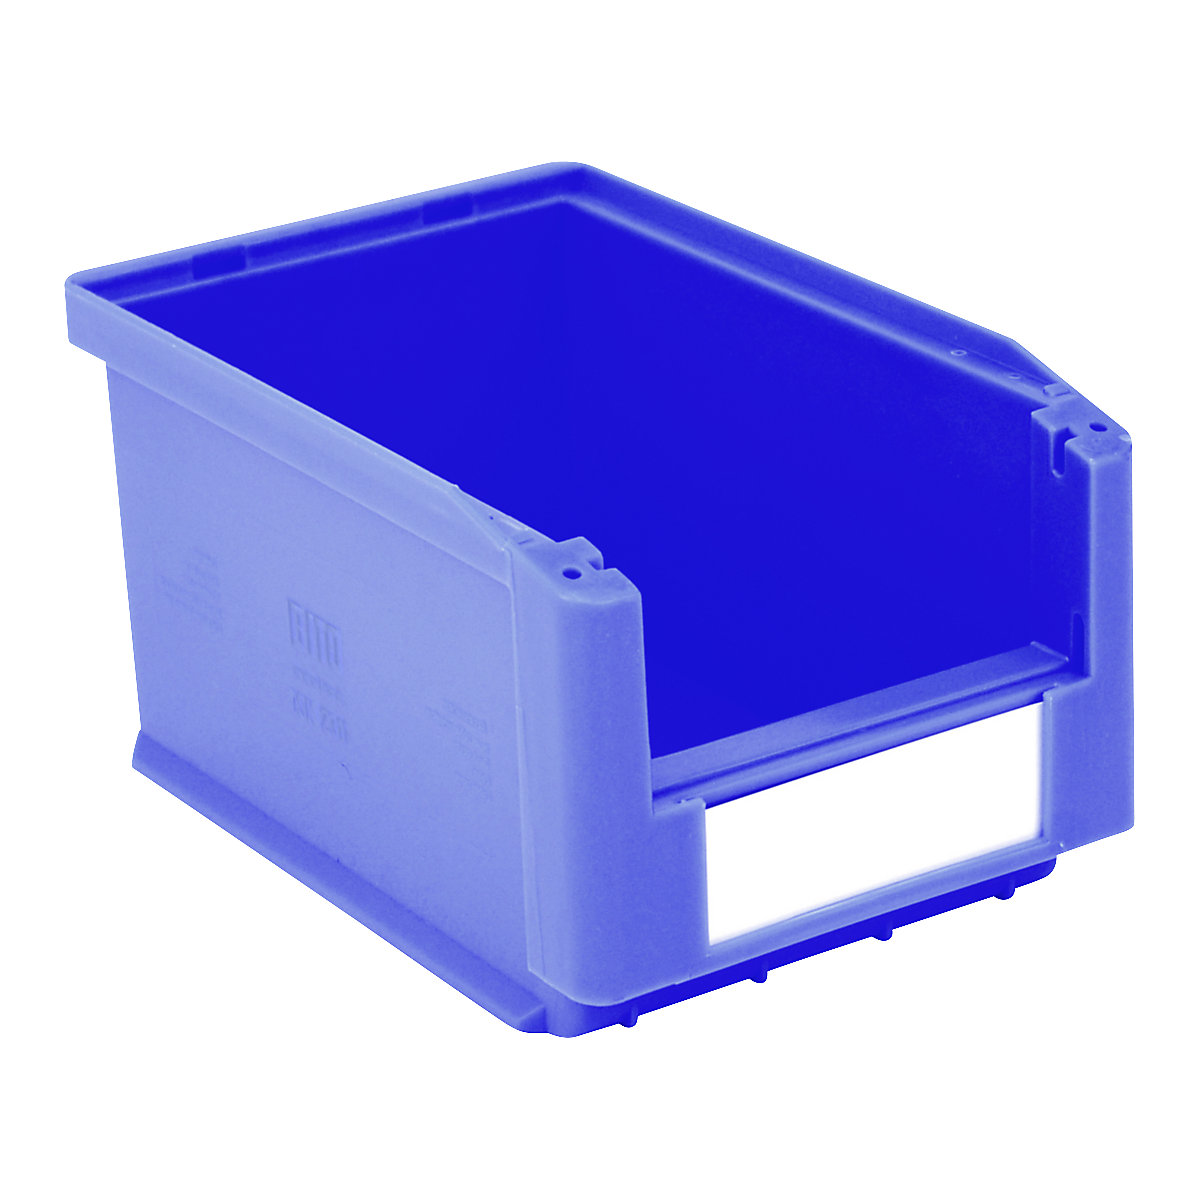 Skladovacia prepravka s viditeľným obsahom – BITO, d x š x v 230 x 150 x 125 mm, OJ 20 ks, modrá-4